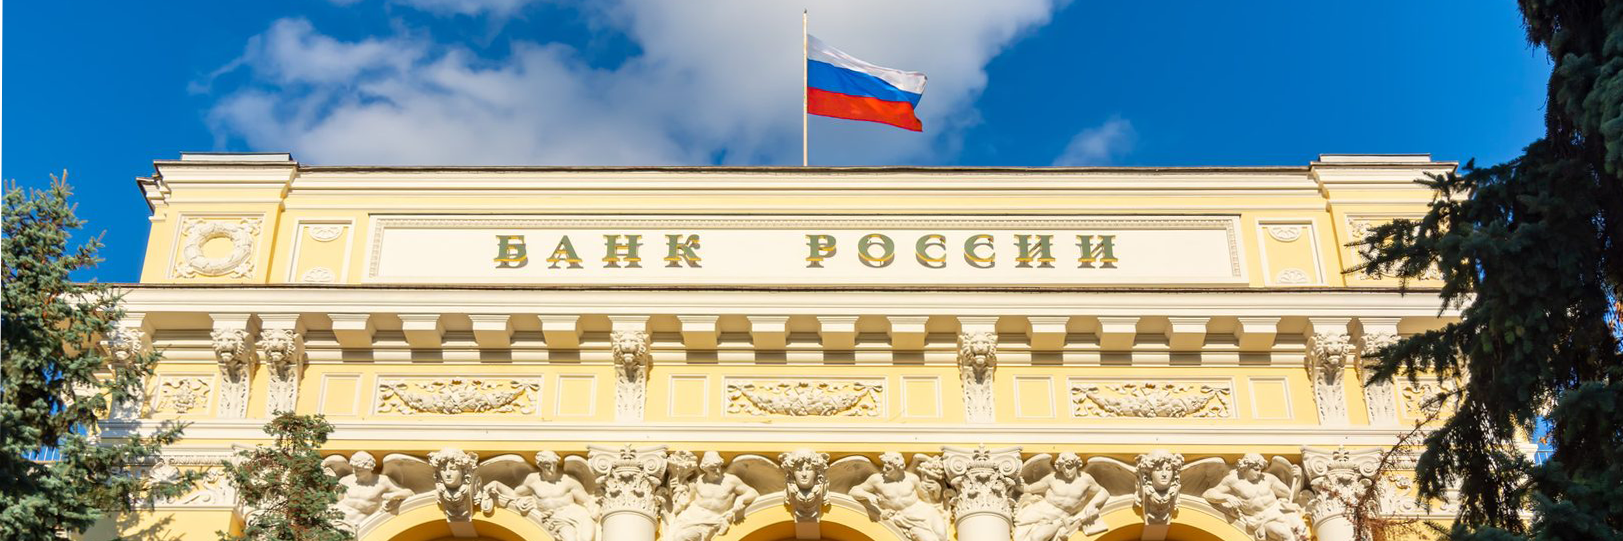 Опрос об удовлетворенности безопасностью банковских услуг от Банка России